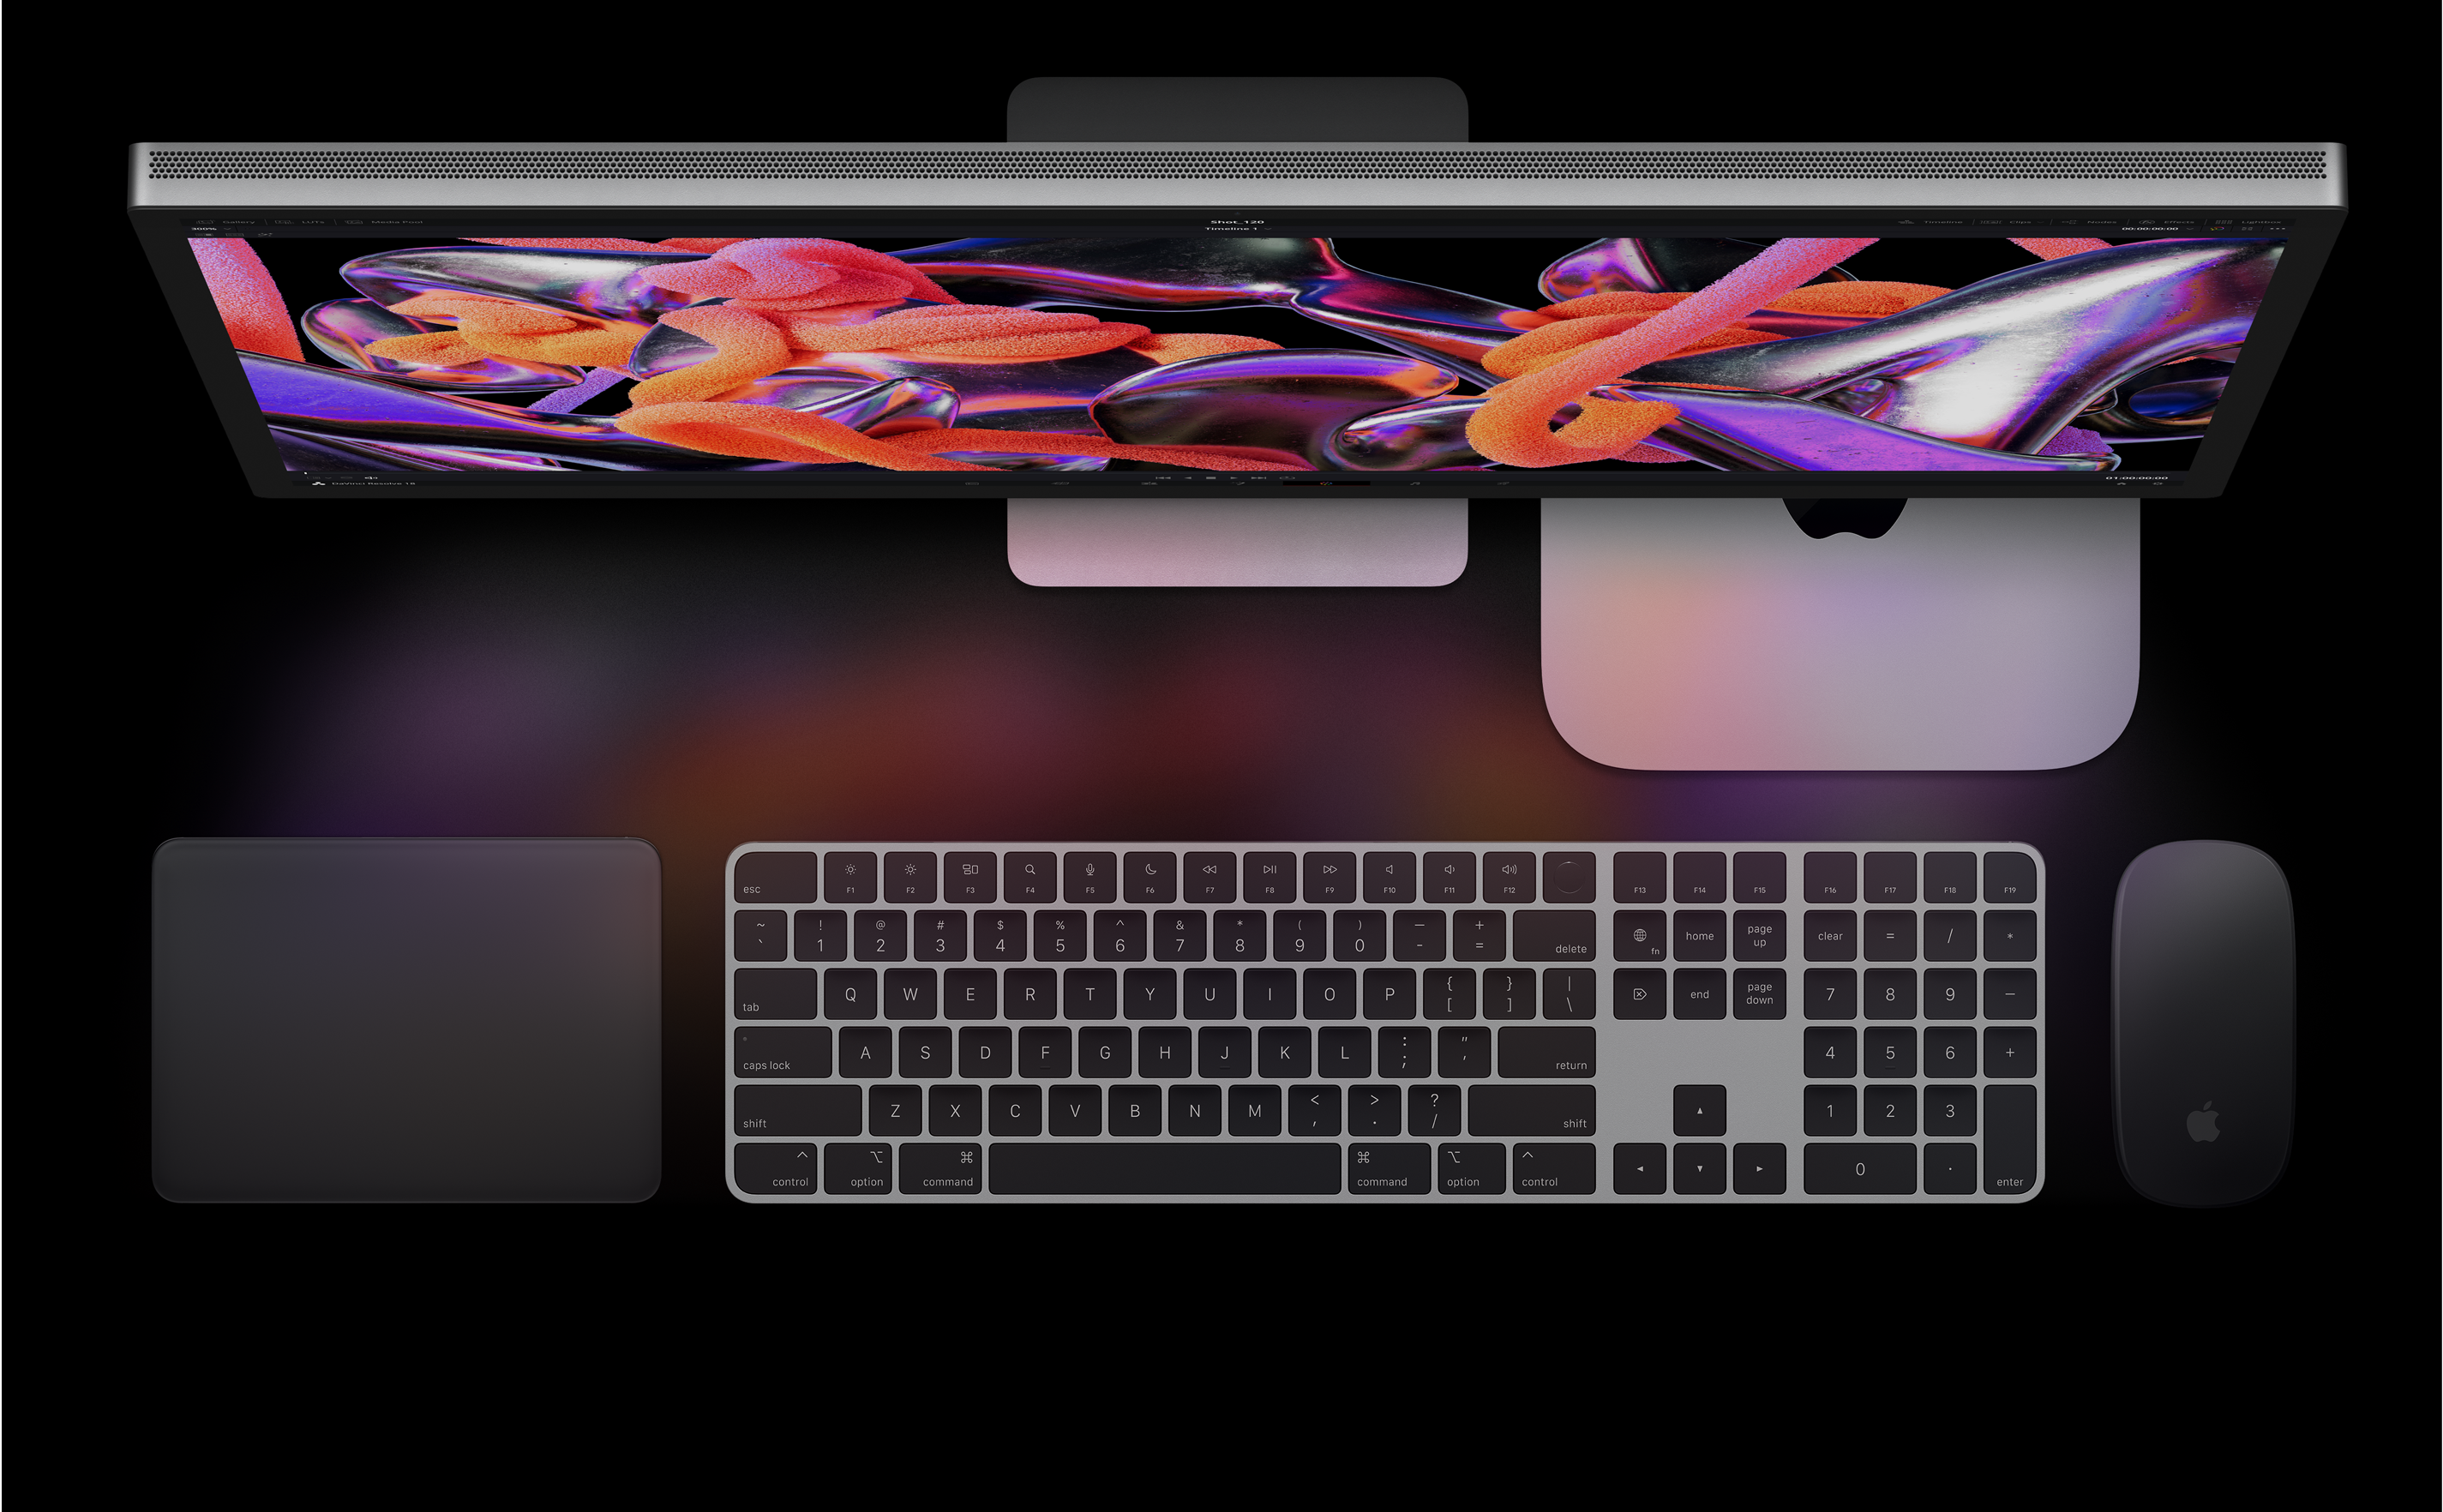 Vista superior de un Studio Display, un Mac mini, un Magic Trackpad, un Magic Keyboard y un Magic Mouse.